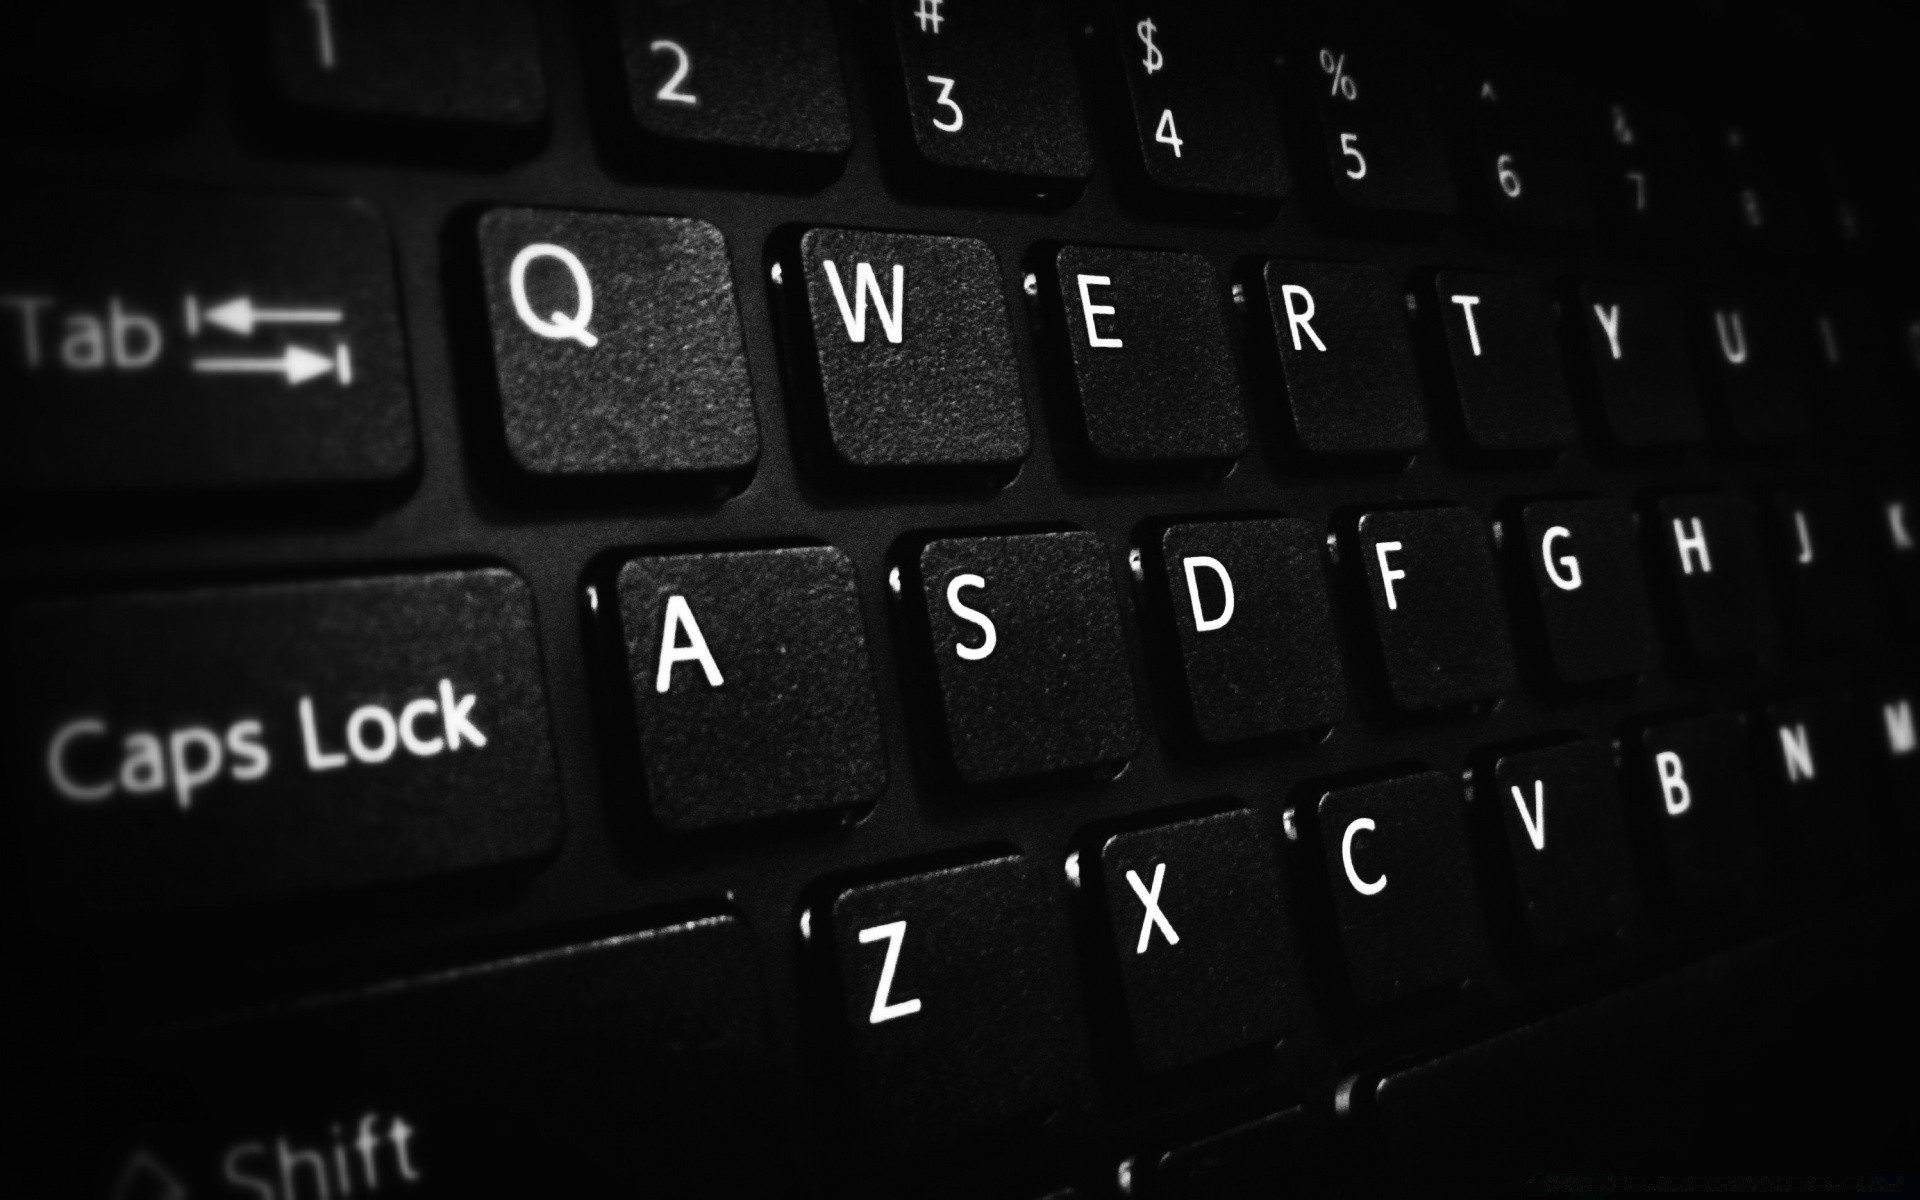 черно-белое клавиатура бизнес тип интернет технология компьютер ключ алфавит электроника общение данные подключение ноутбук кнопка оборудование текст помощь поддержка письмо